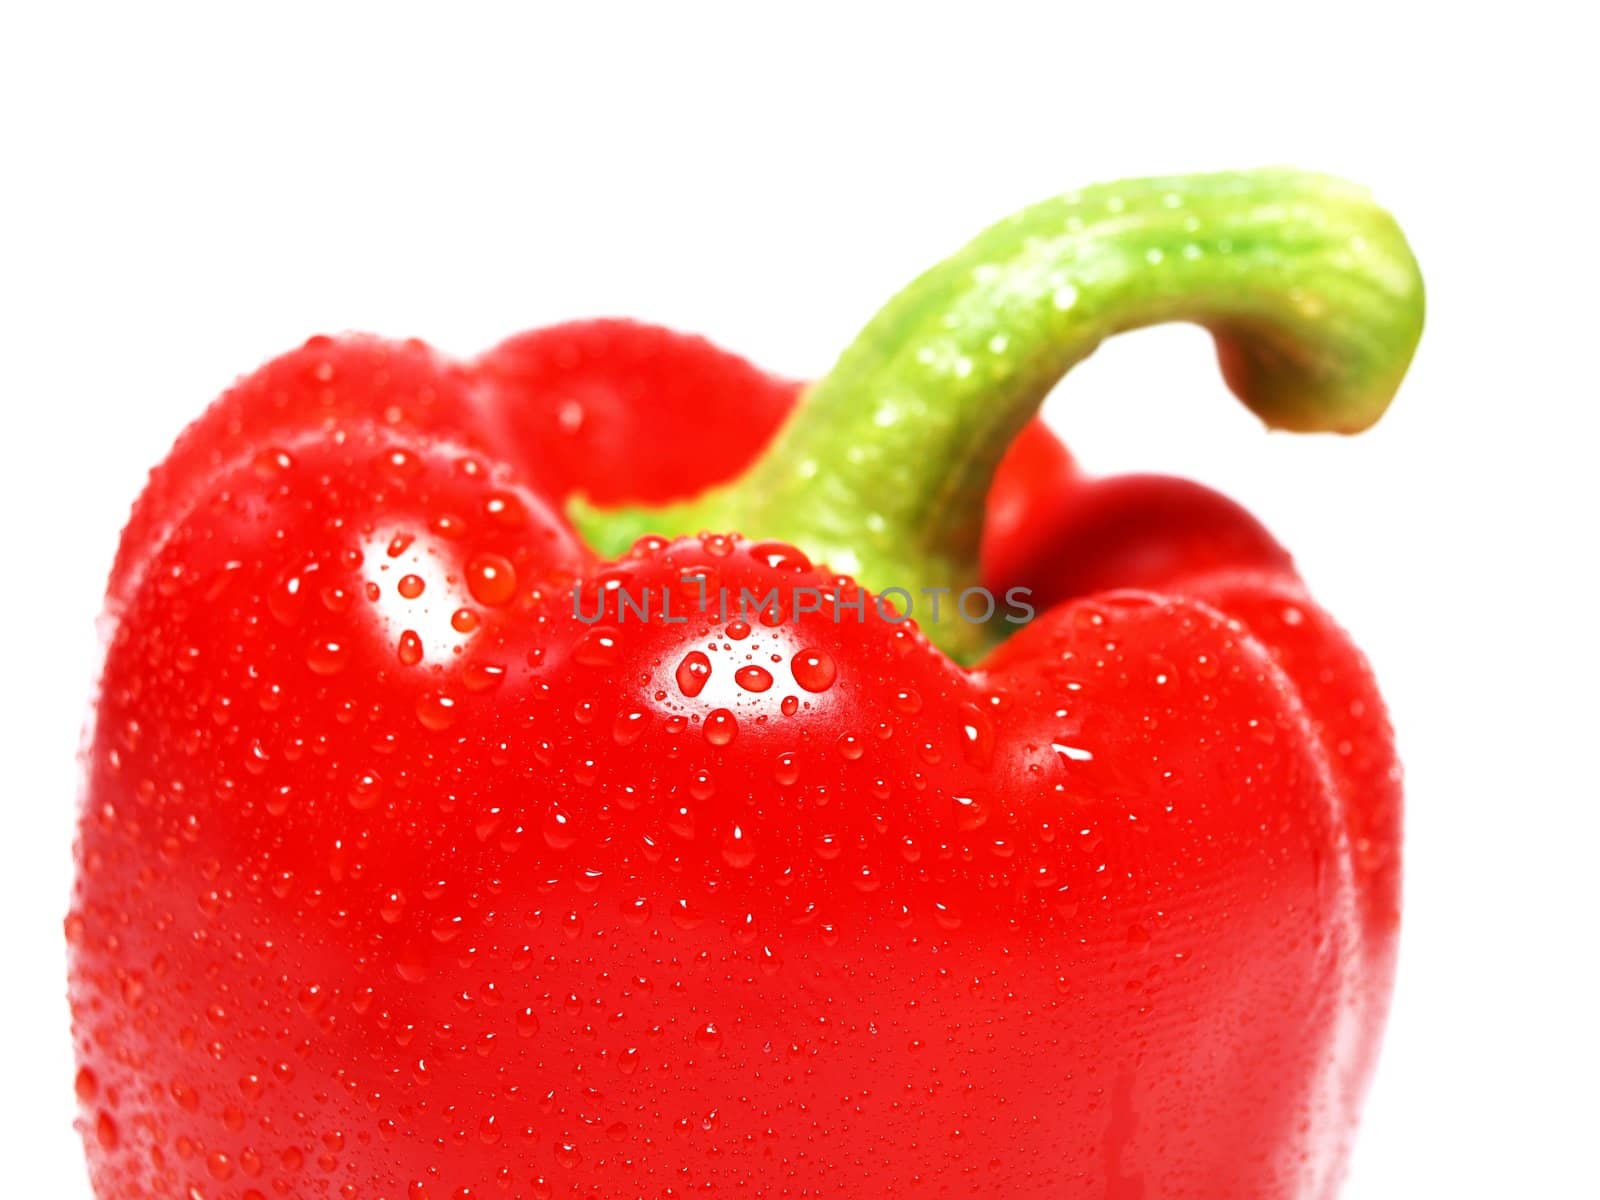 Red pepper by Arvebettum